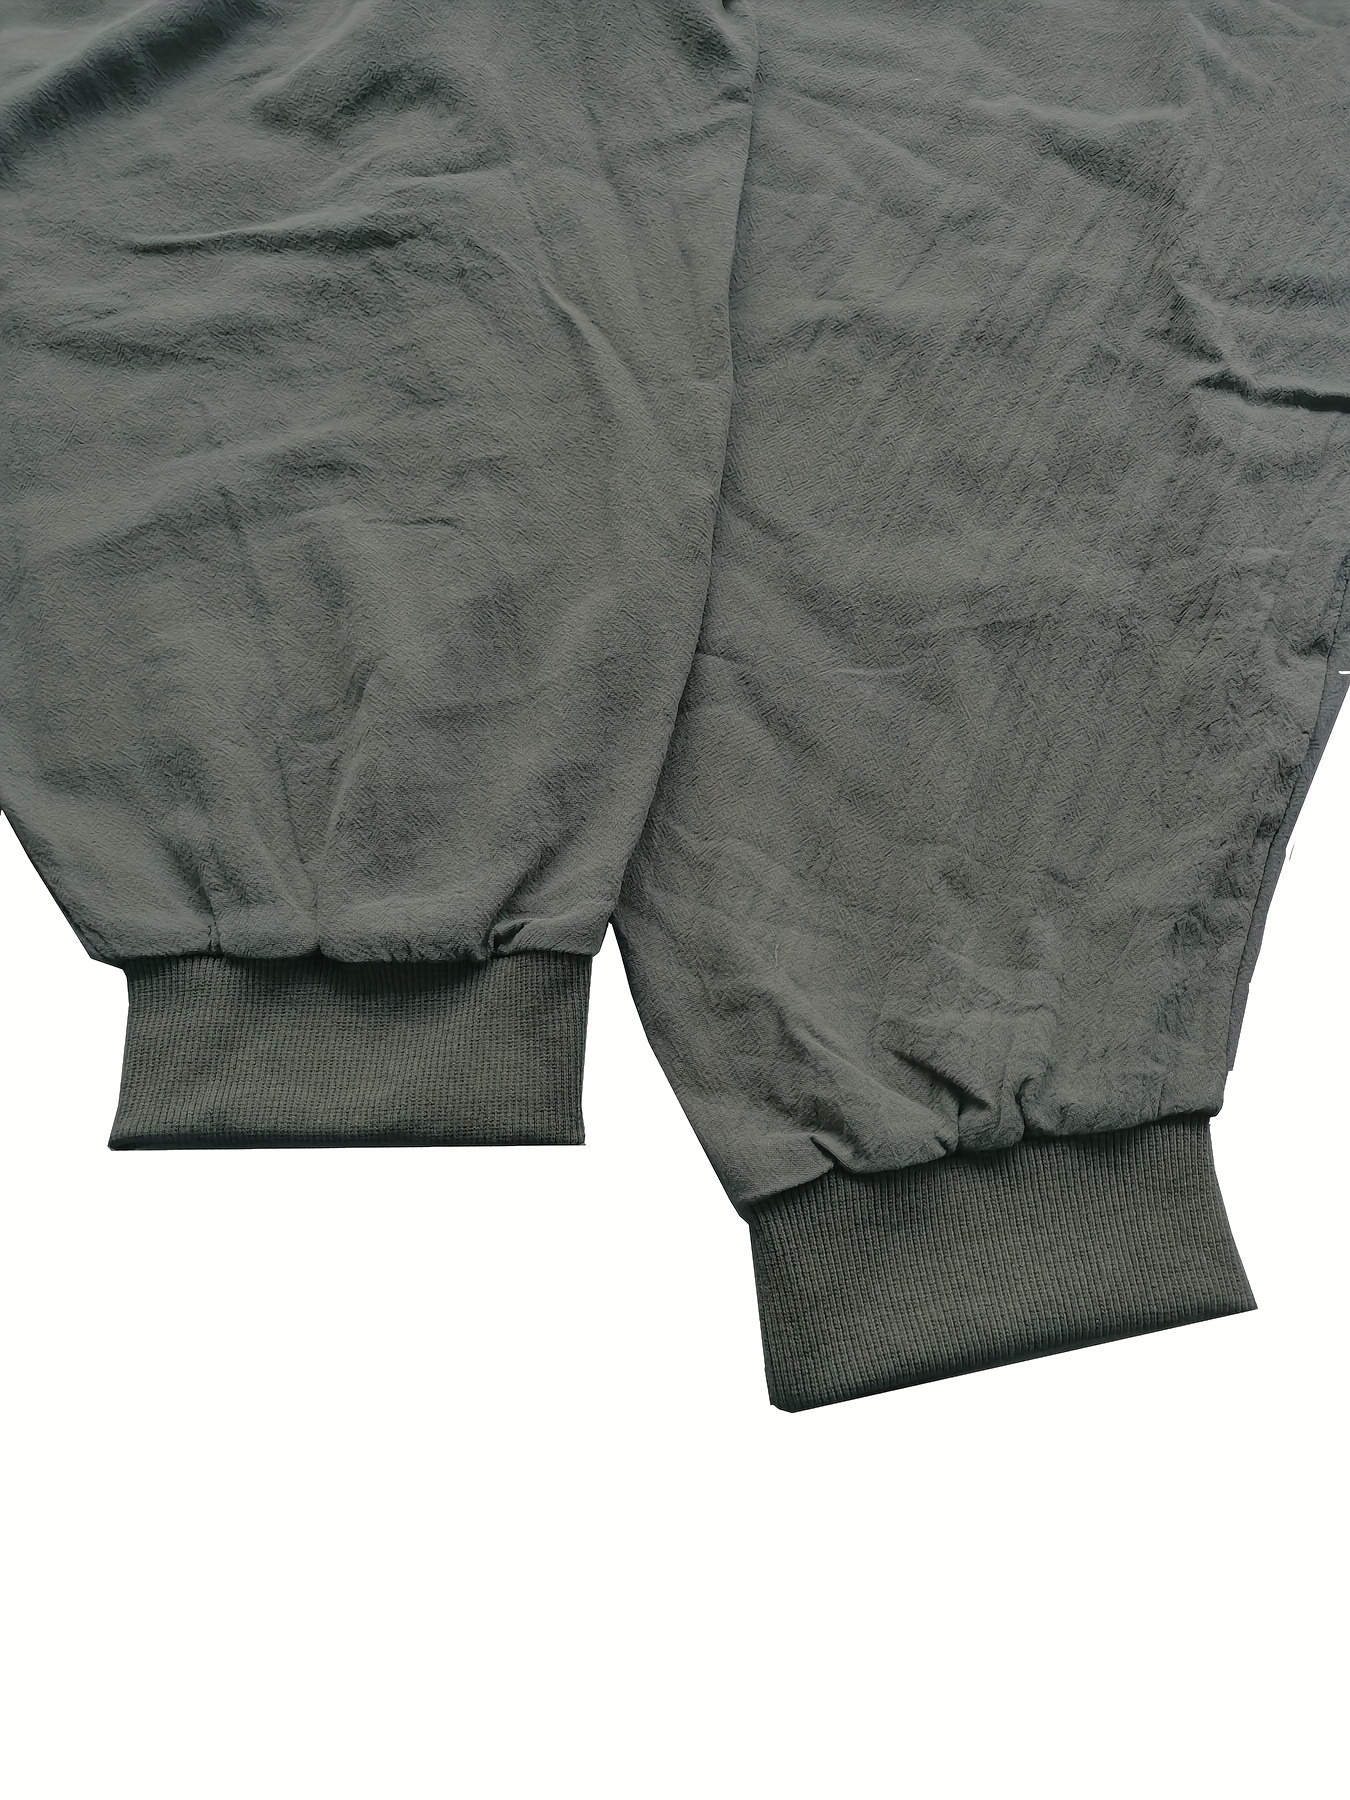 Pants/funky Harem Pants 428 Long Pants. 100% Cotton Fits M-L Size